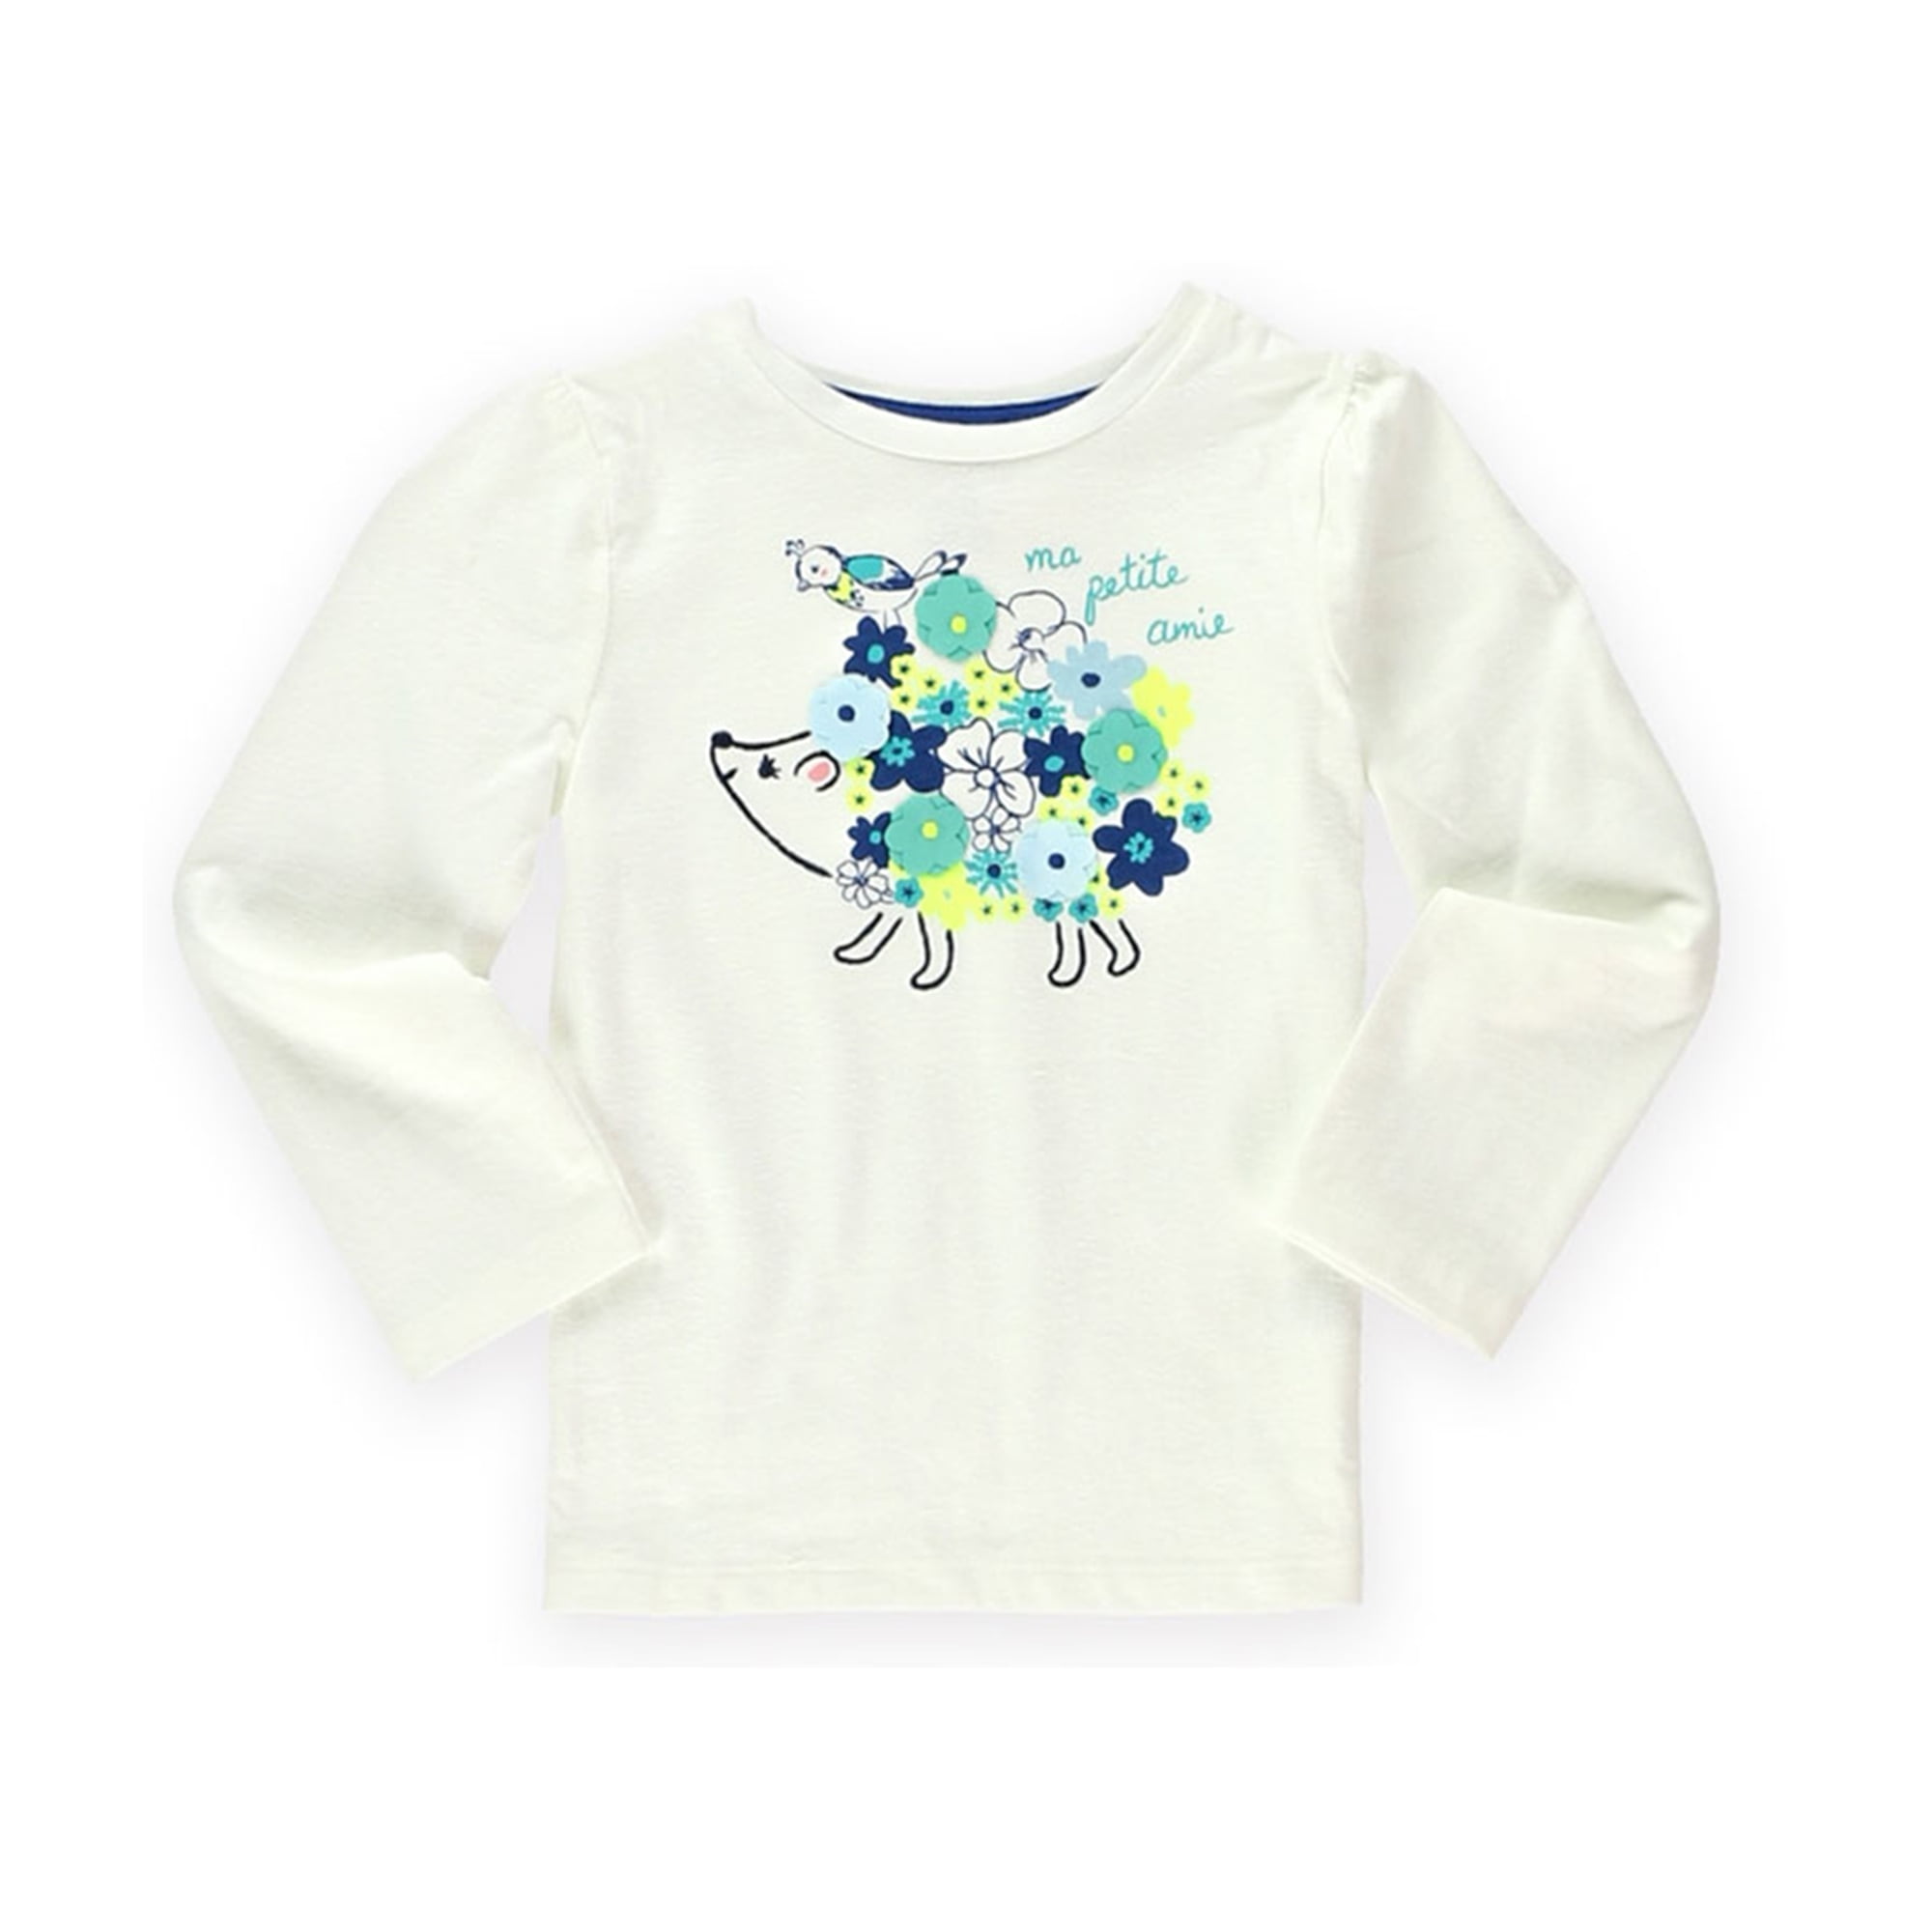 NWT Gymboree Aqua Basic Tee Shirt Top Toddler Girl 